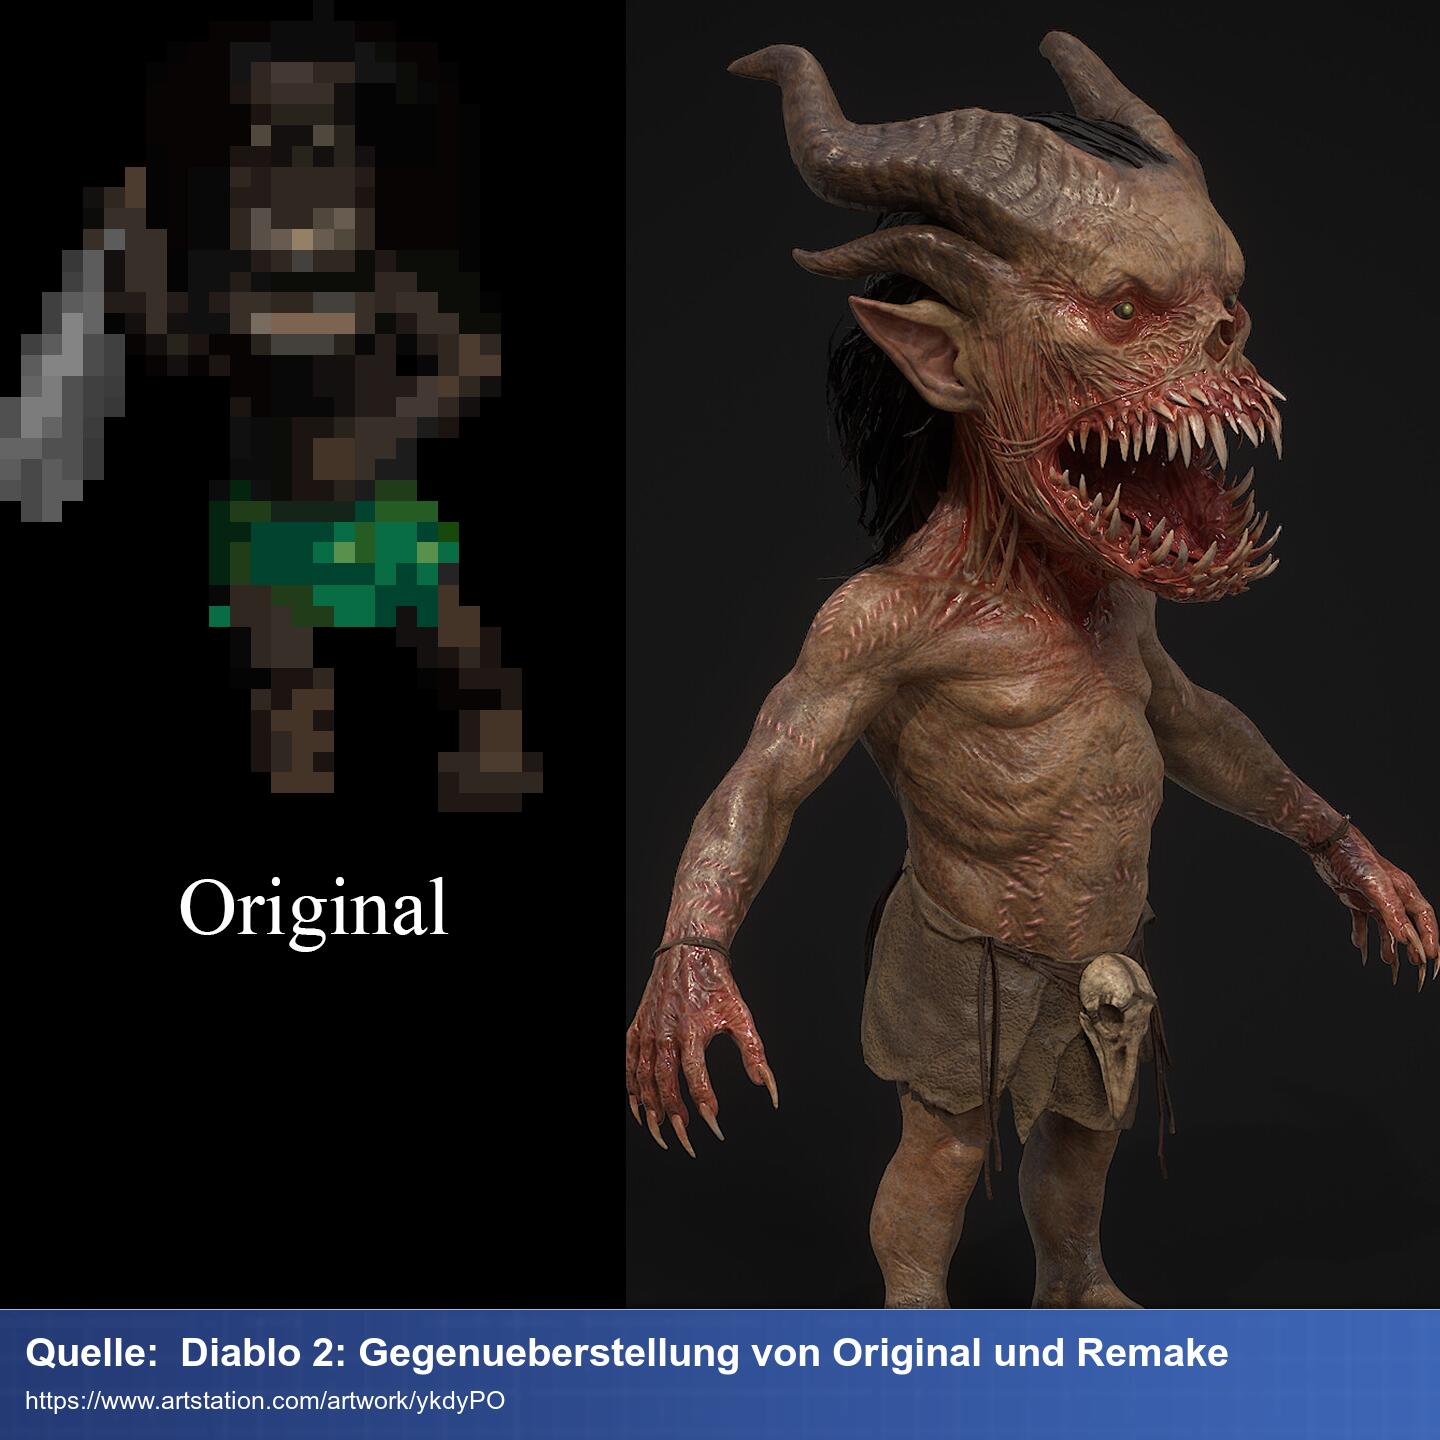 Gegenüberstellung der alten Grafik von Diablo 2 und den hoch detailierten Modellen des Remakes.